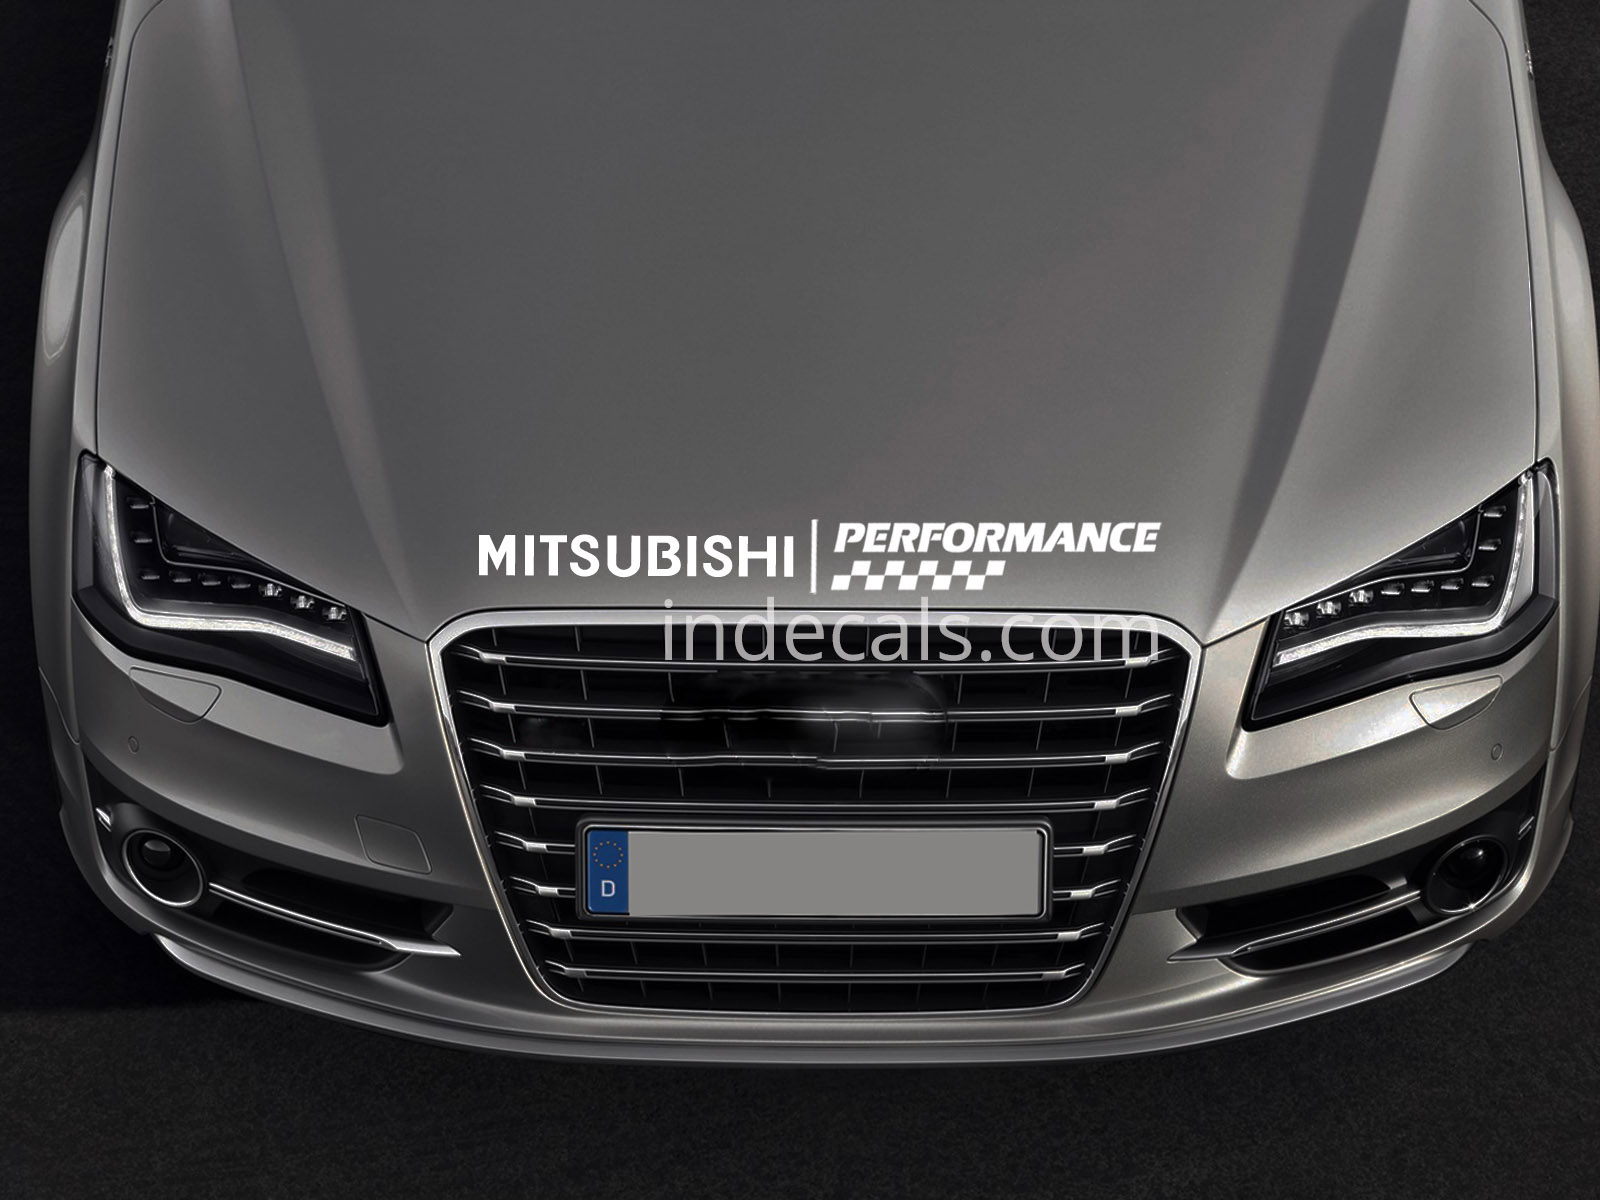 1 x Mitsubishi Peformance Sticker for Bonnet - White